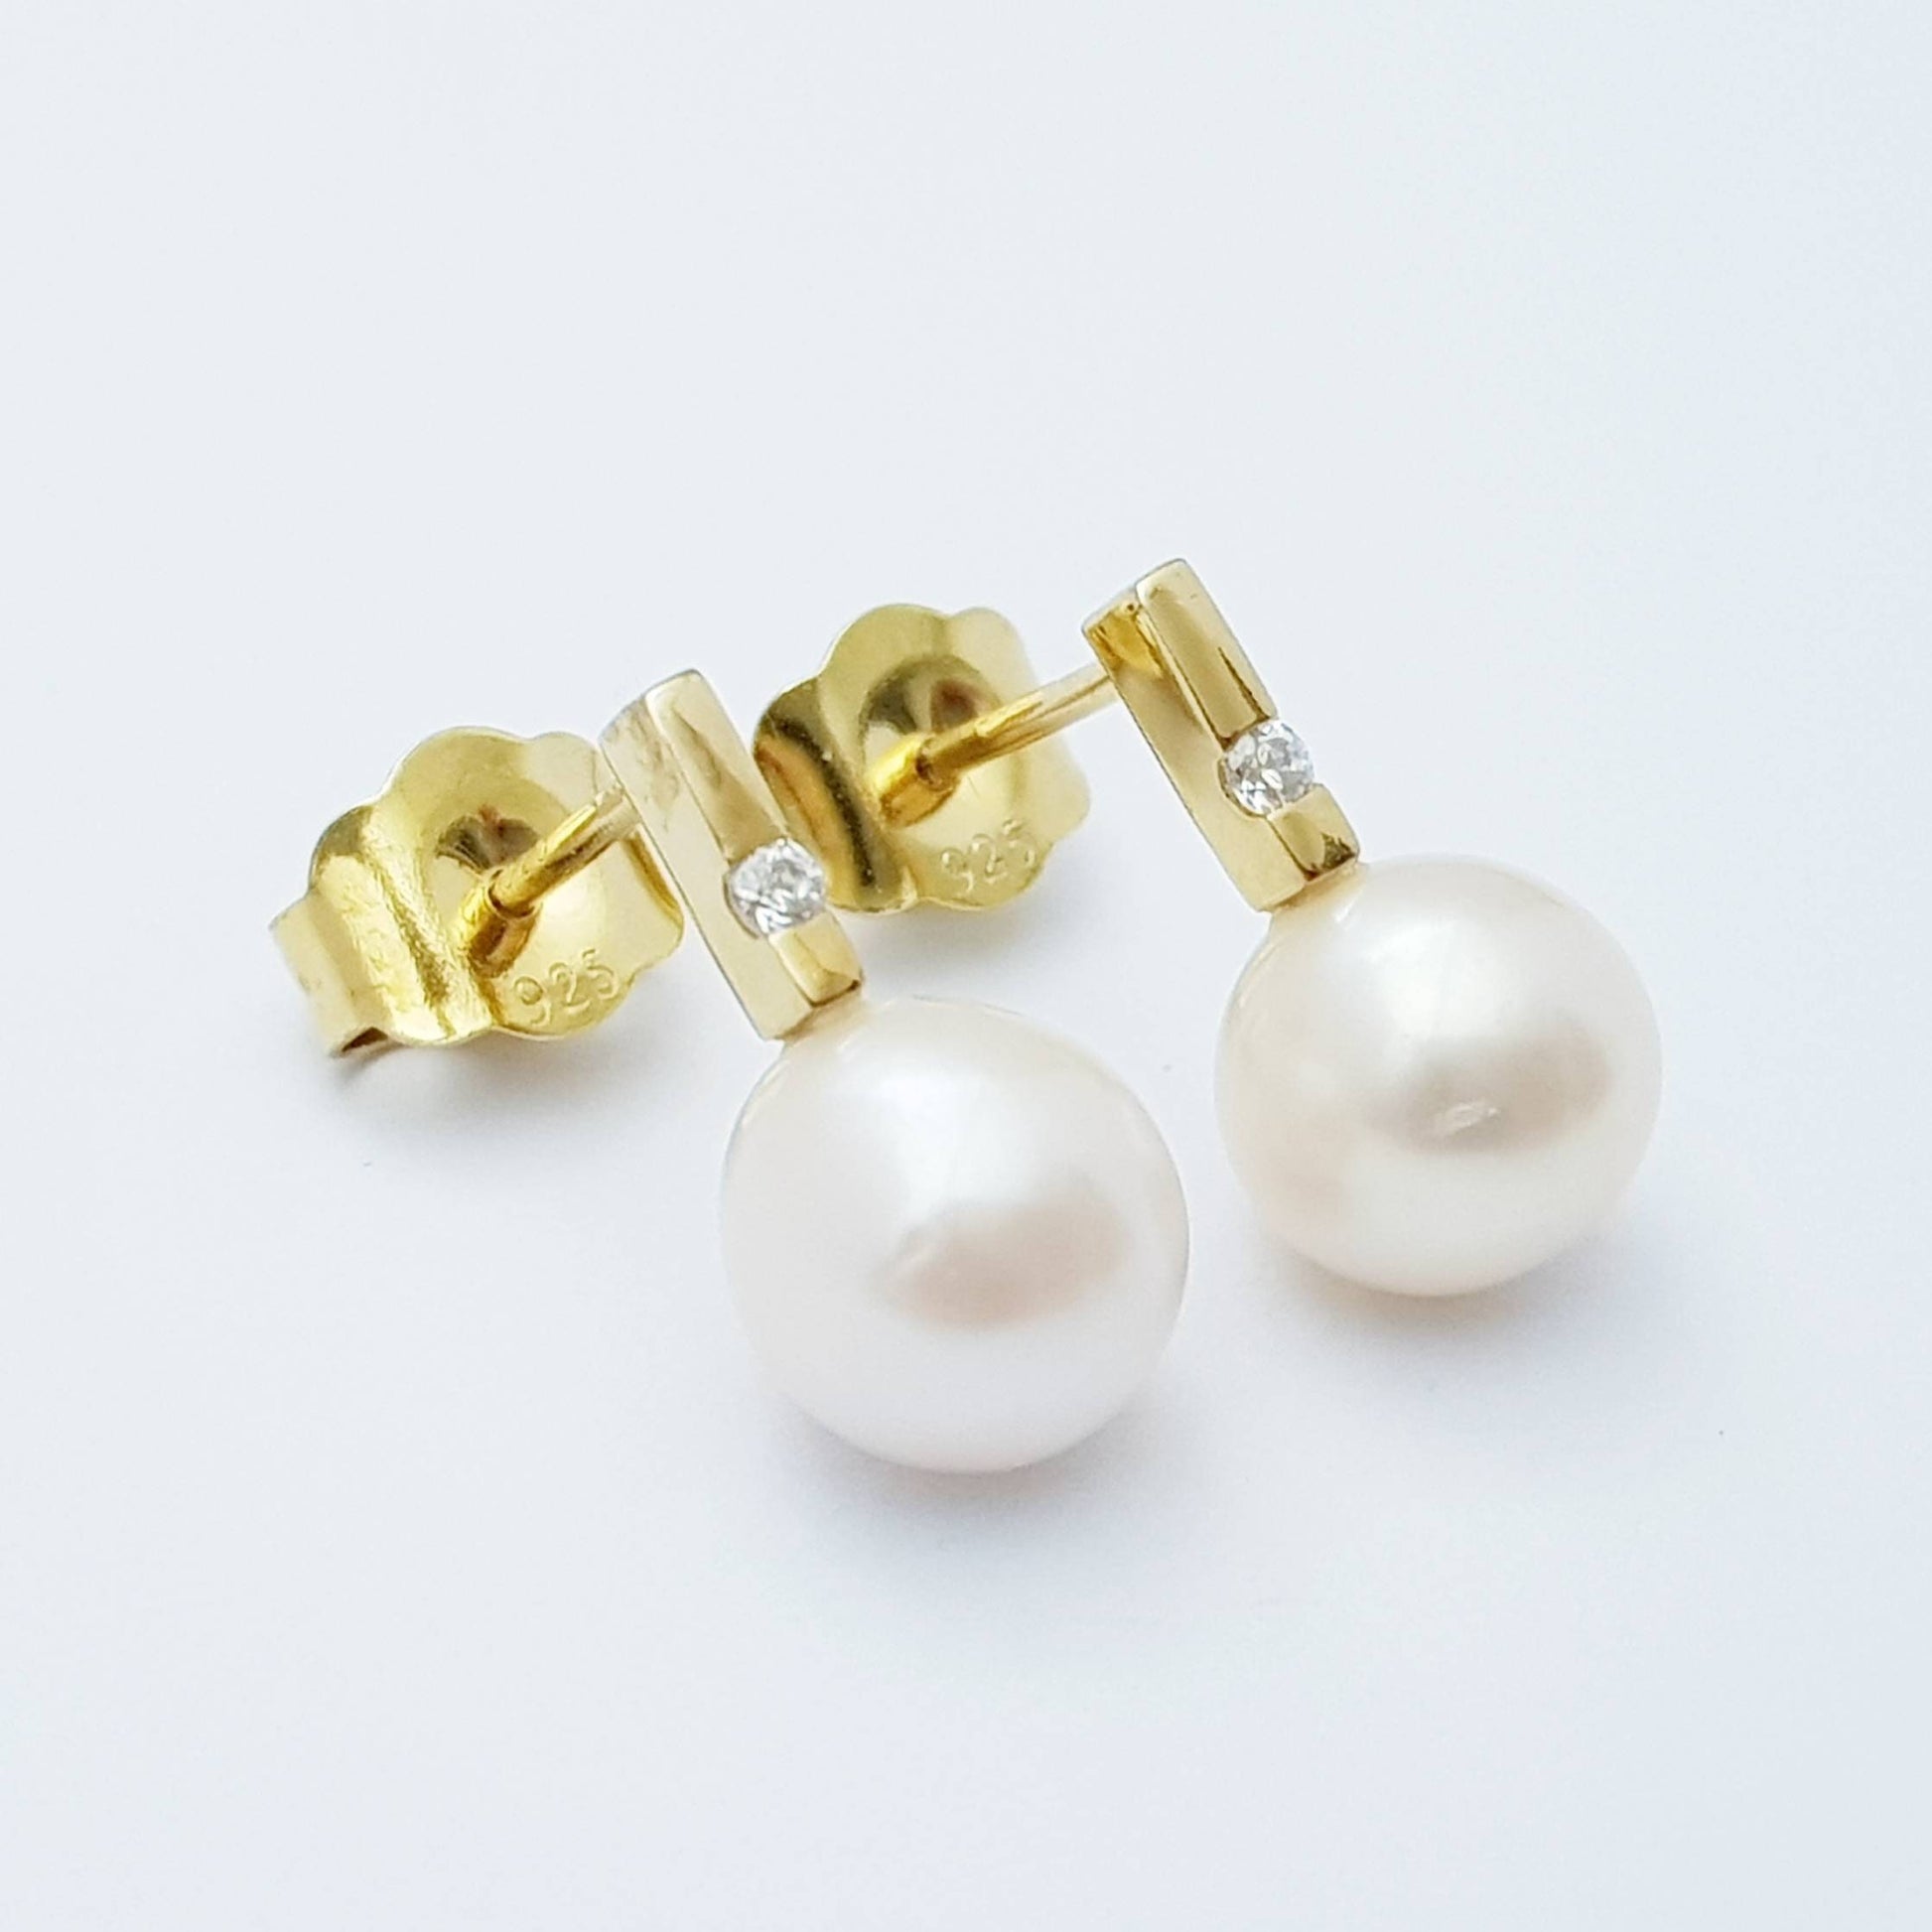 Small freshwater pearl studs earrings, minimal gold pearl earrings, elegant bar stud earrings